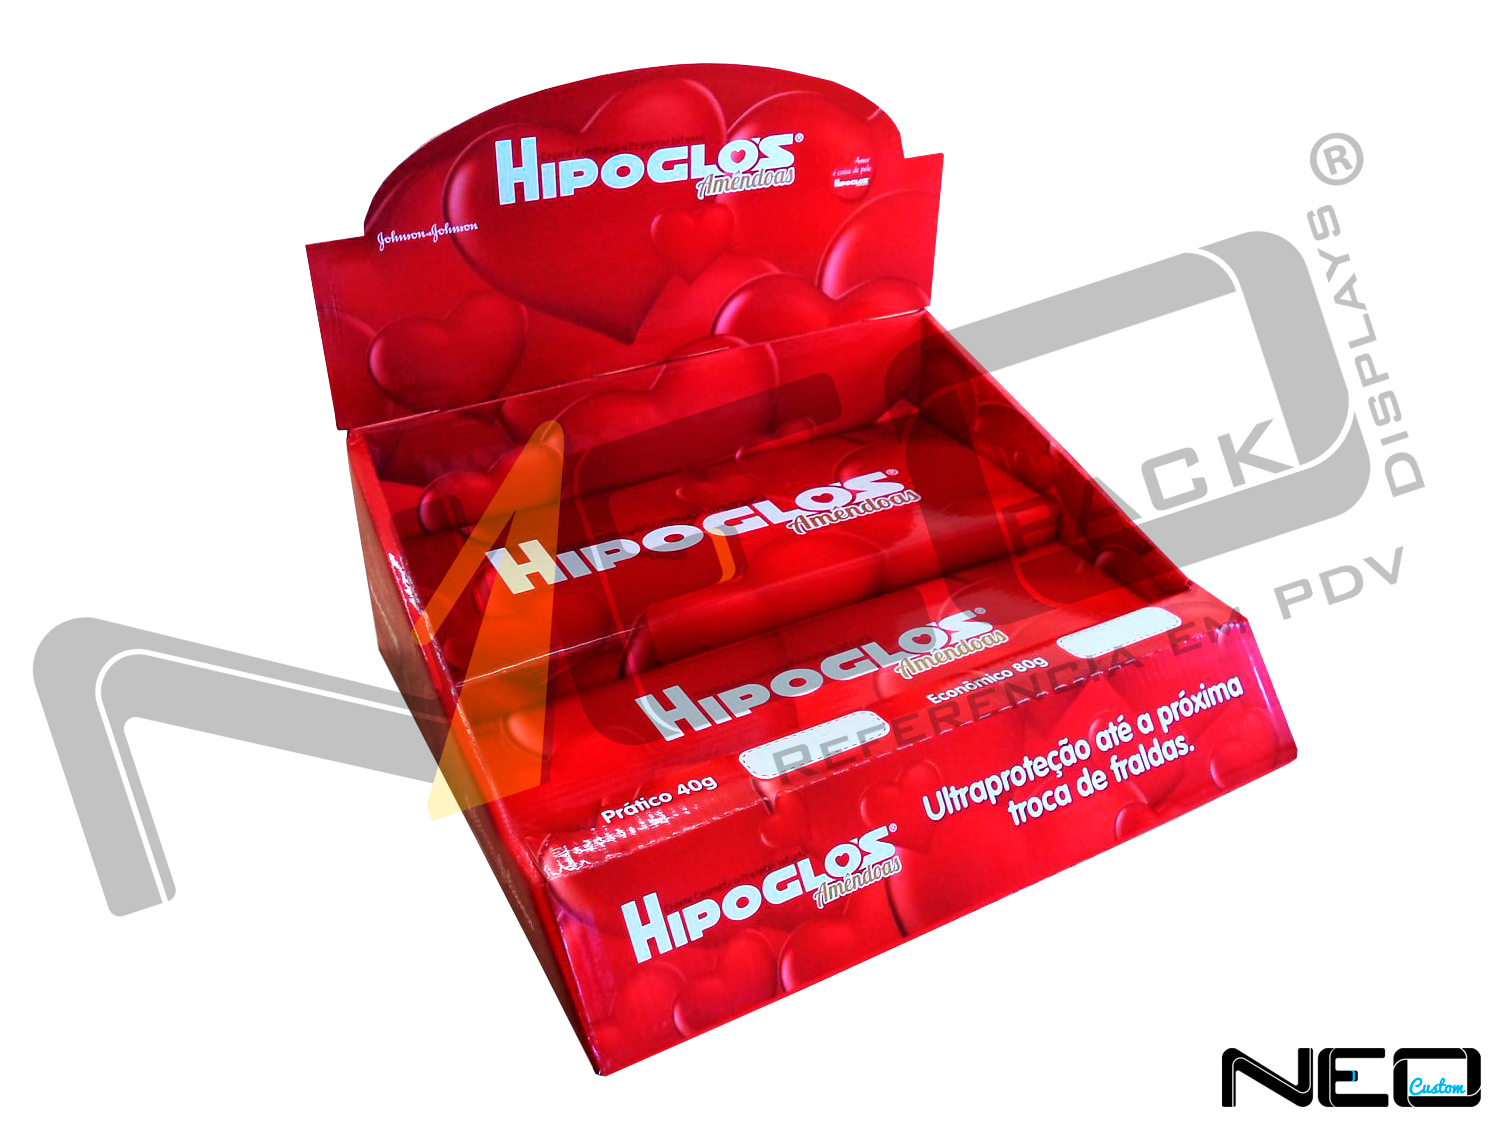 display de papelão expositor site_neopack_produtos_displaybalcao_hipoglos-1500x1126